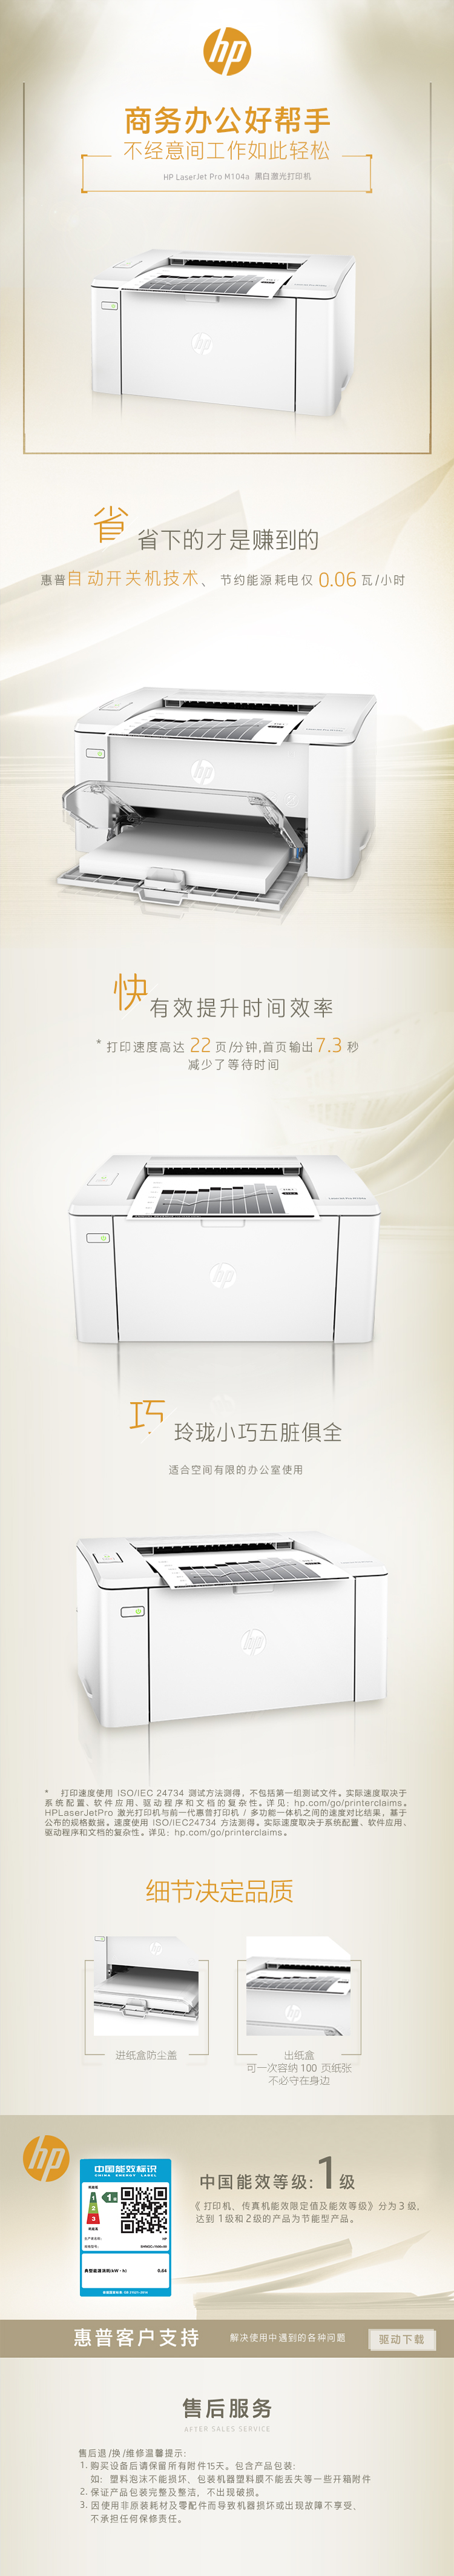 惠普(HP) M104a 黑白激光打印机小型办公单功能打印机(打印)